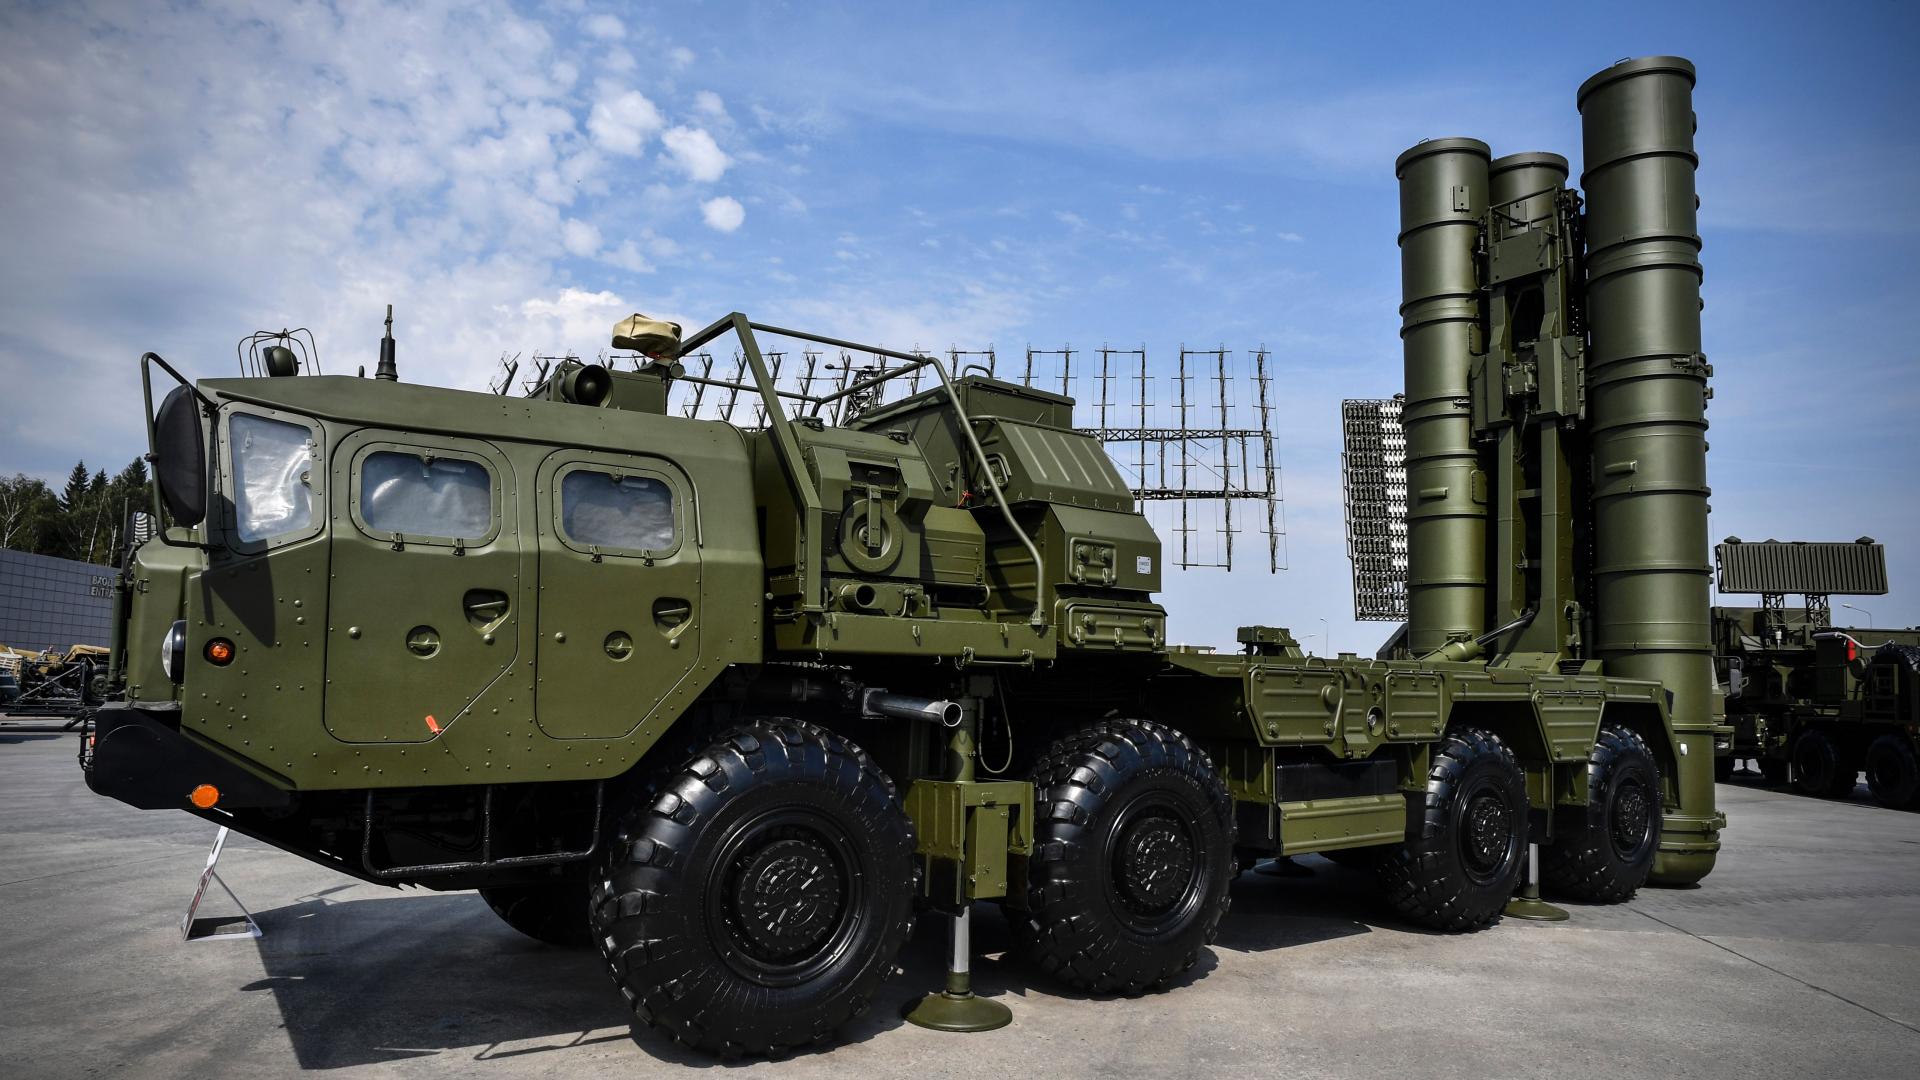 قطر تسعى للحصول على صواريخ “إس-400” من روسيا.. ووزير خارجيتها: “قرار سيادي”